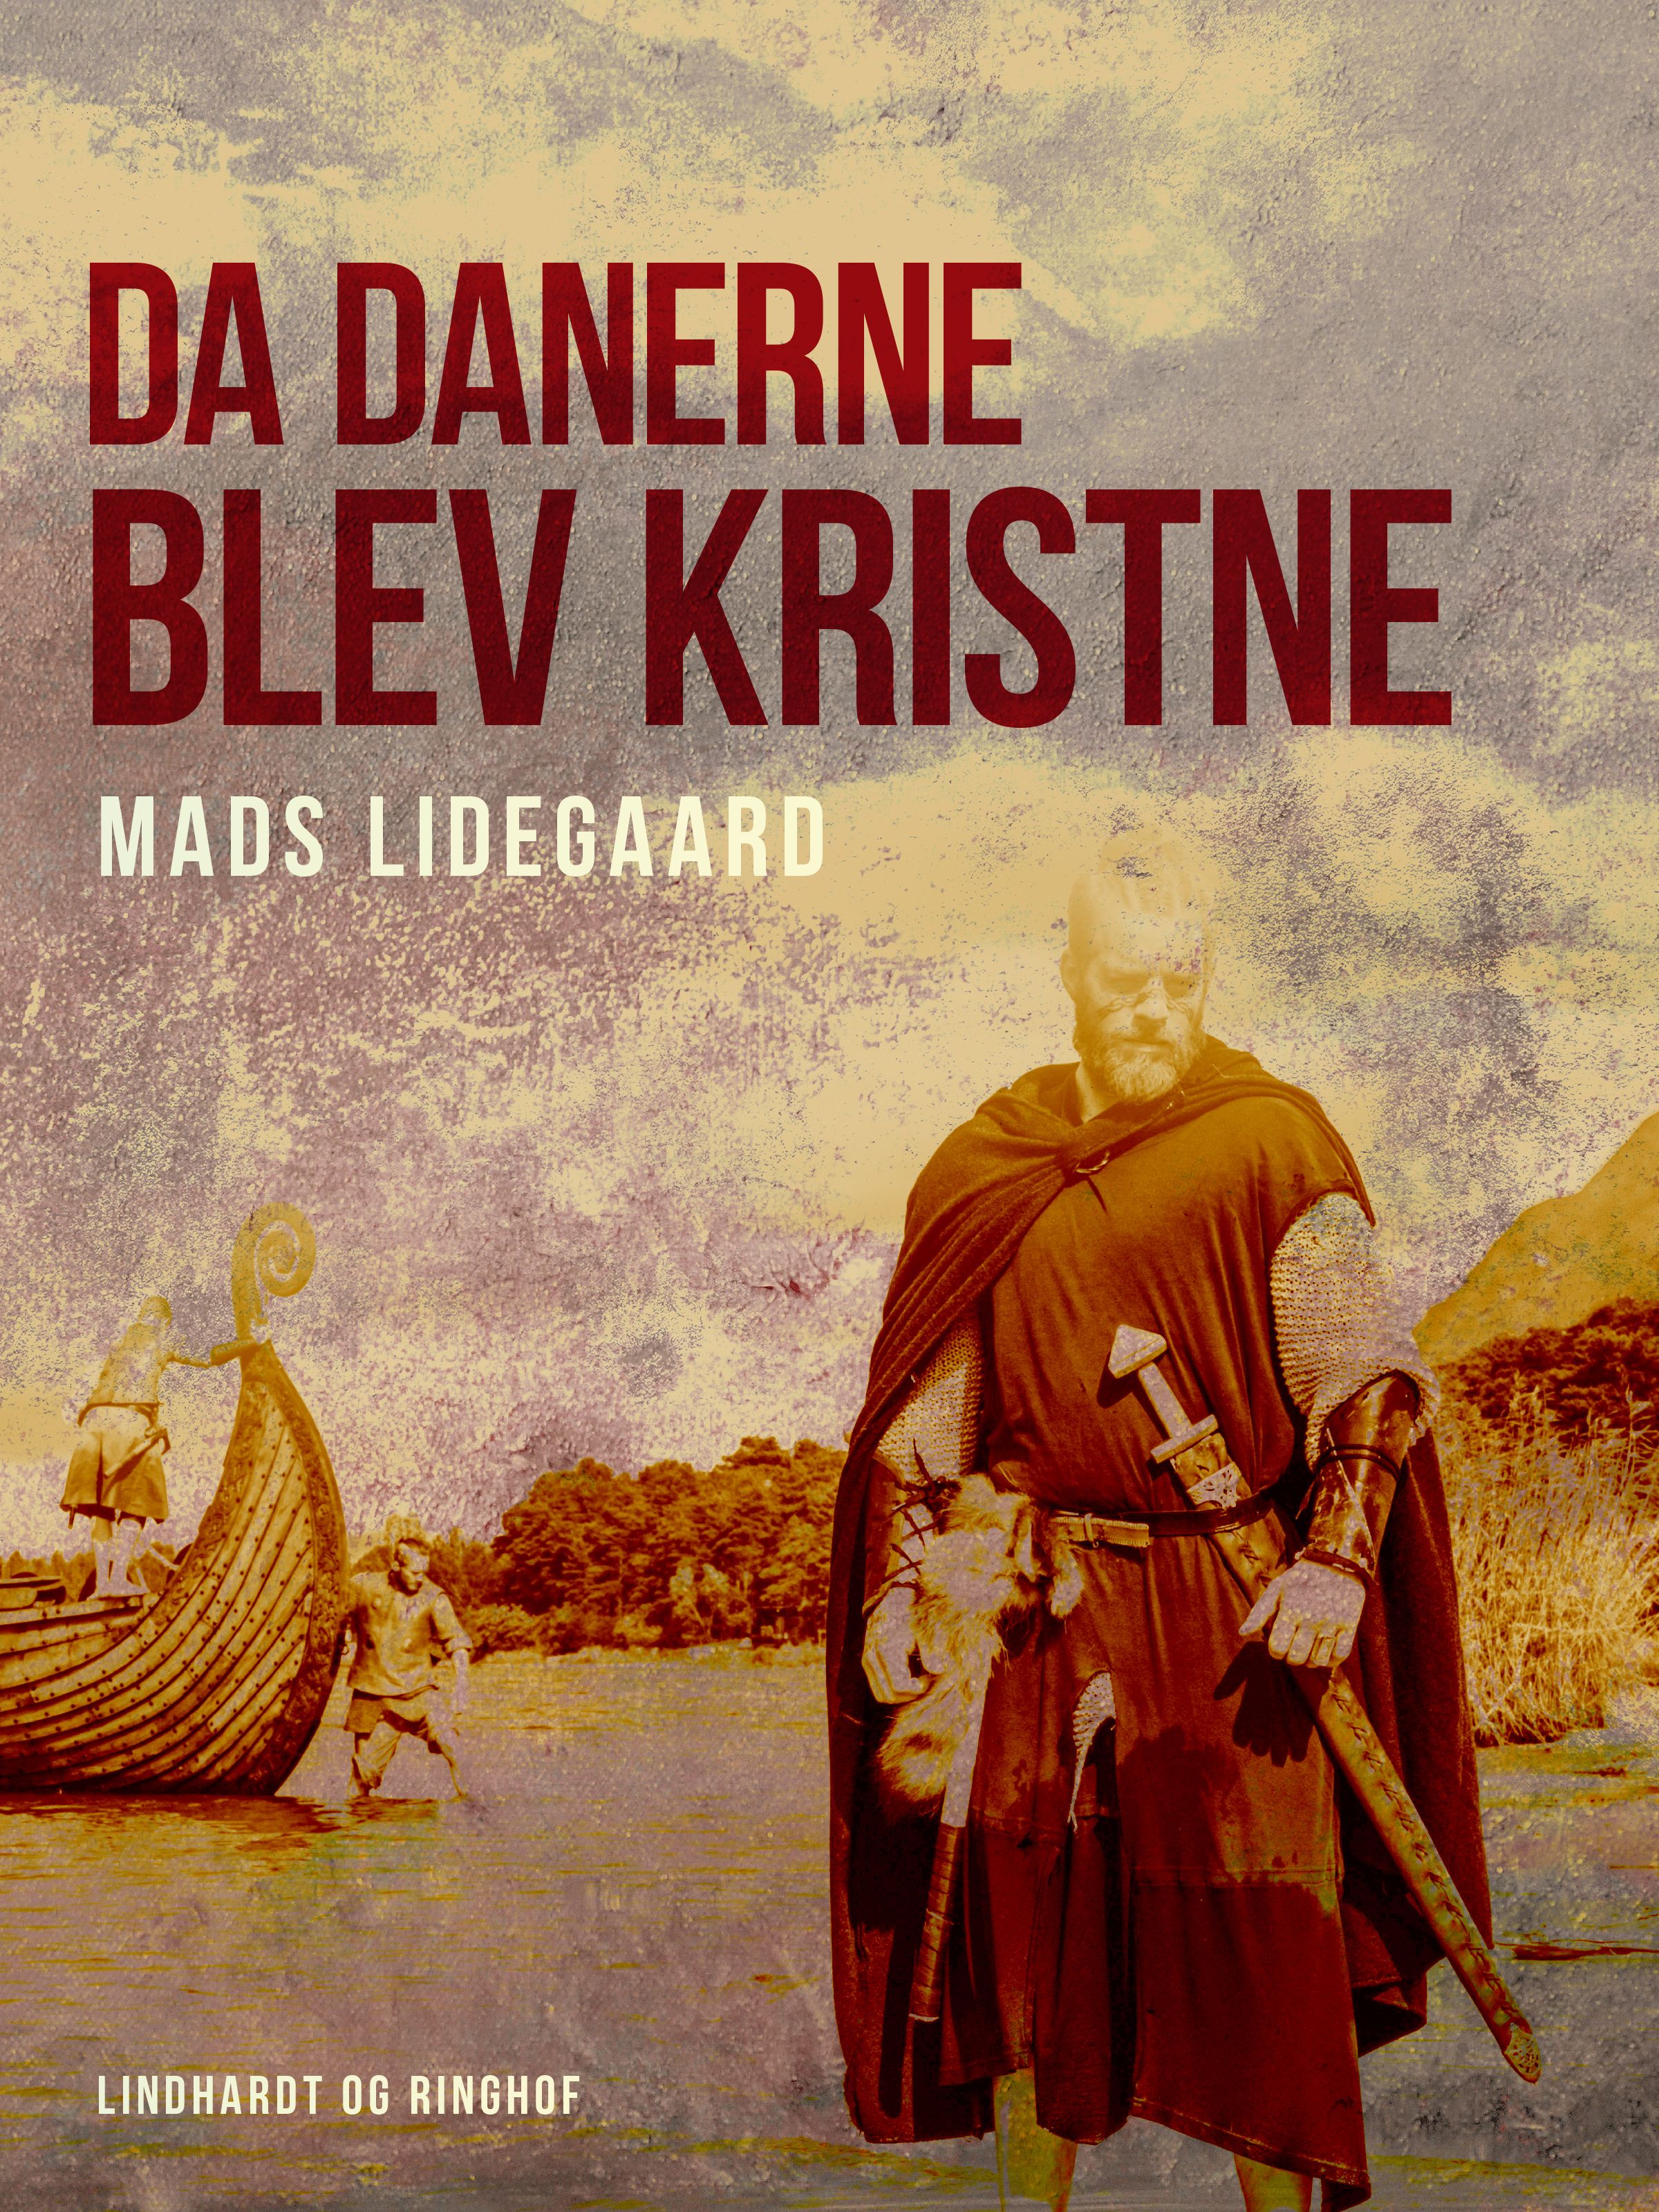 Da danerne blev kristne, e-bok av Mads Lidegaard